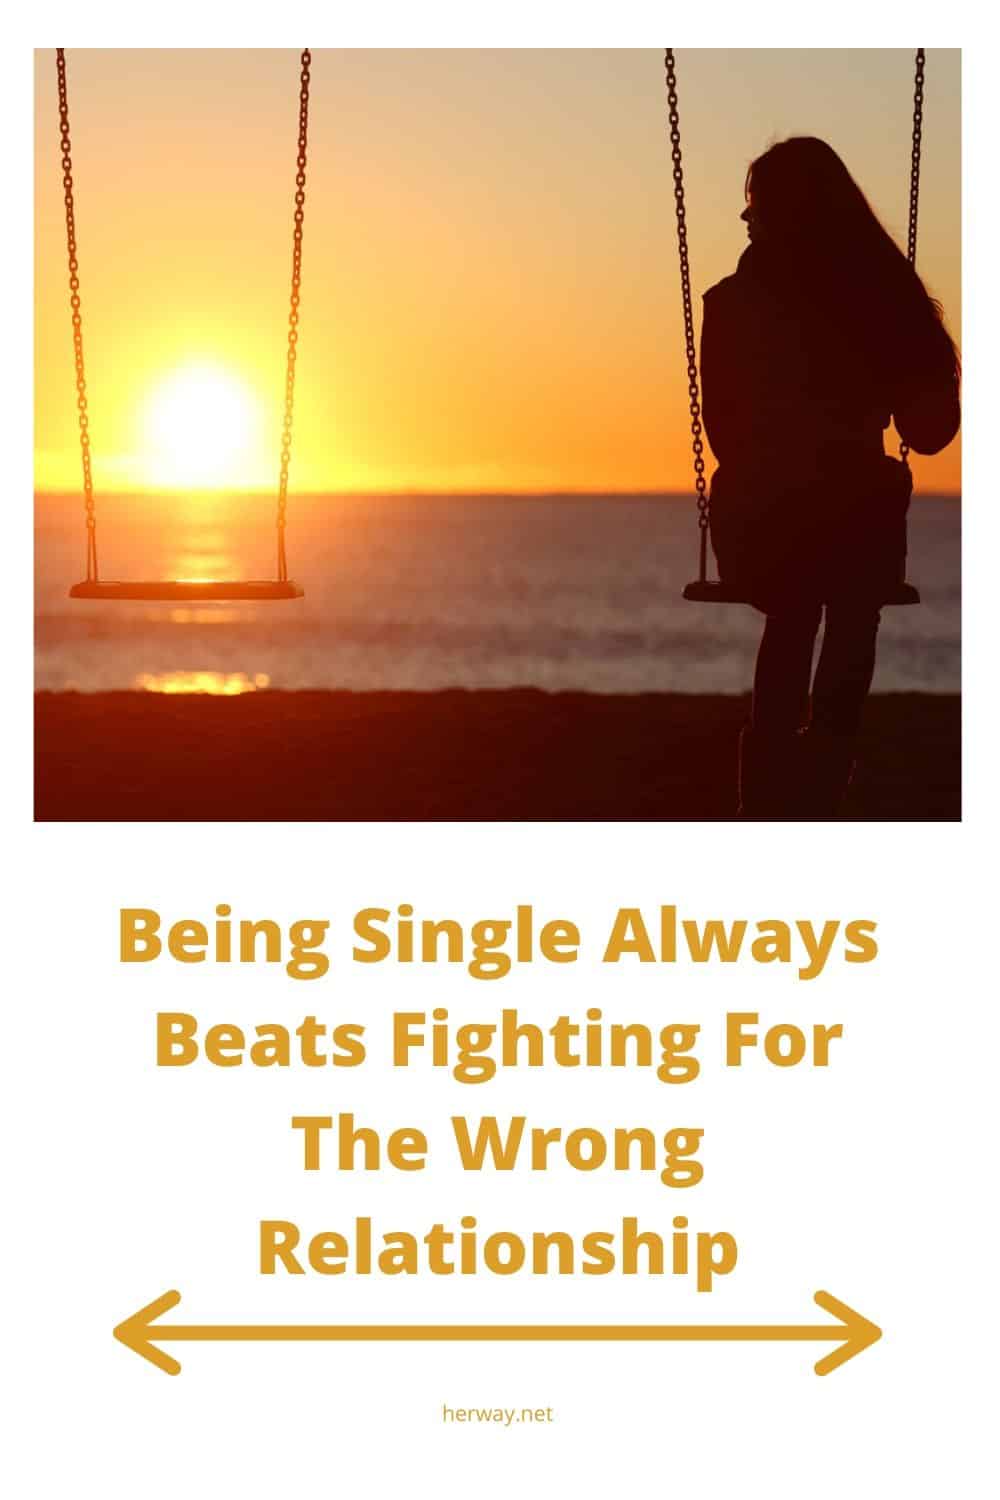 Essere single è sempre meglio che lottare per la relazione sbagliata